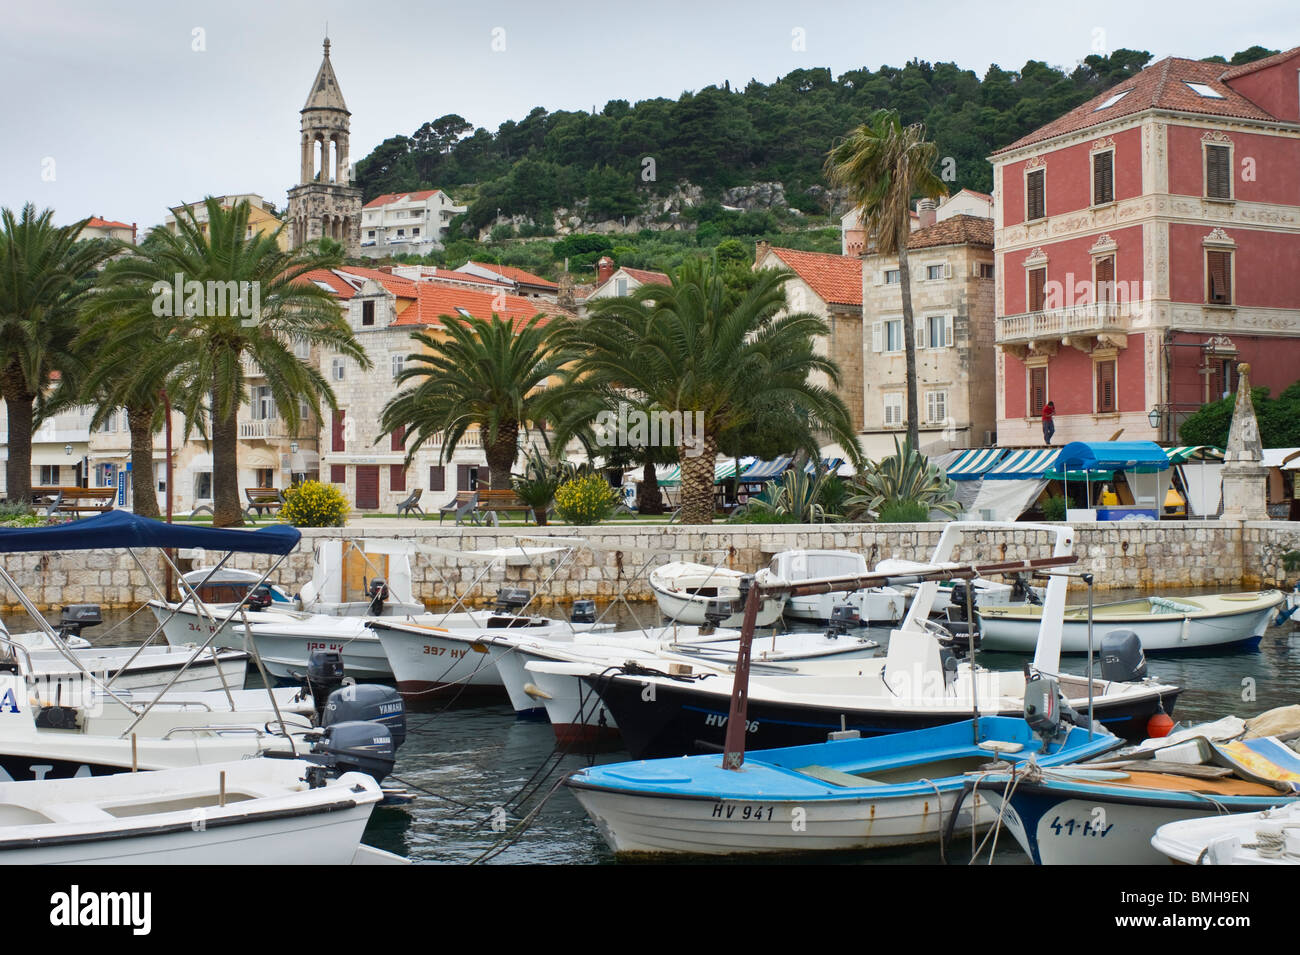 Croazia, Split, riviera dalmata - Isola di Hvar - citta di Hvar porto con piccole imbarcazioni Foto Stock